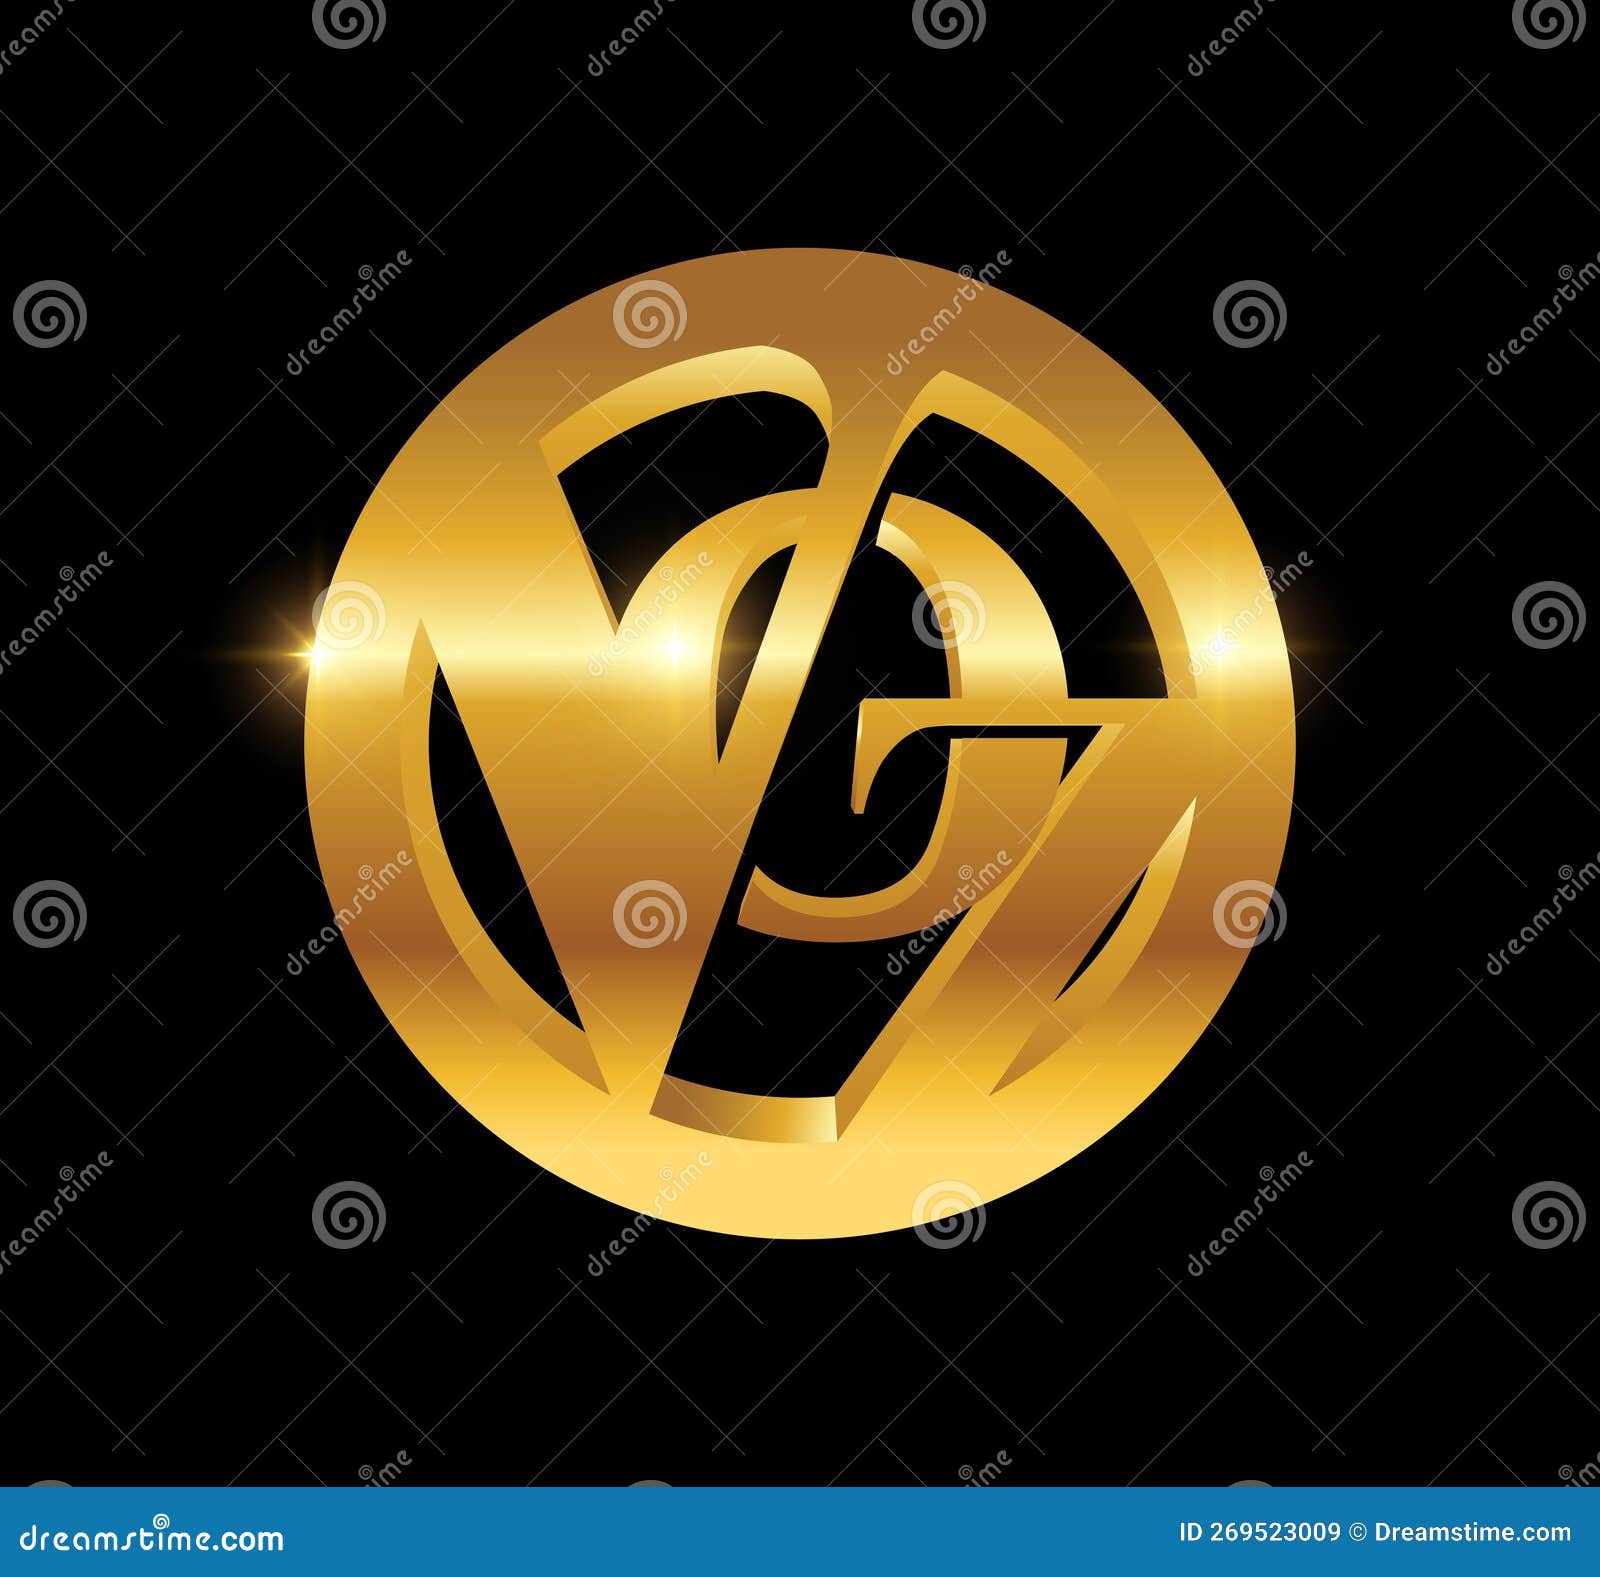 golden monogram logo initial letters voz